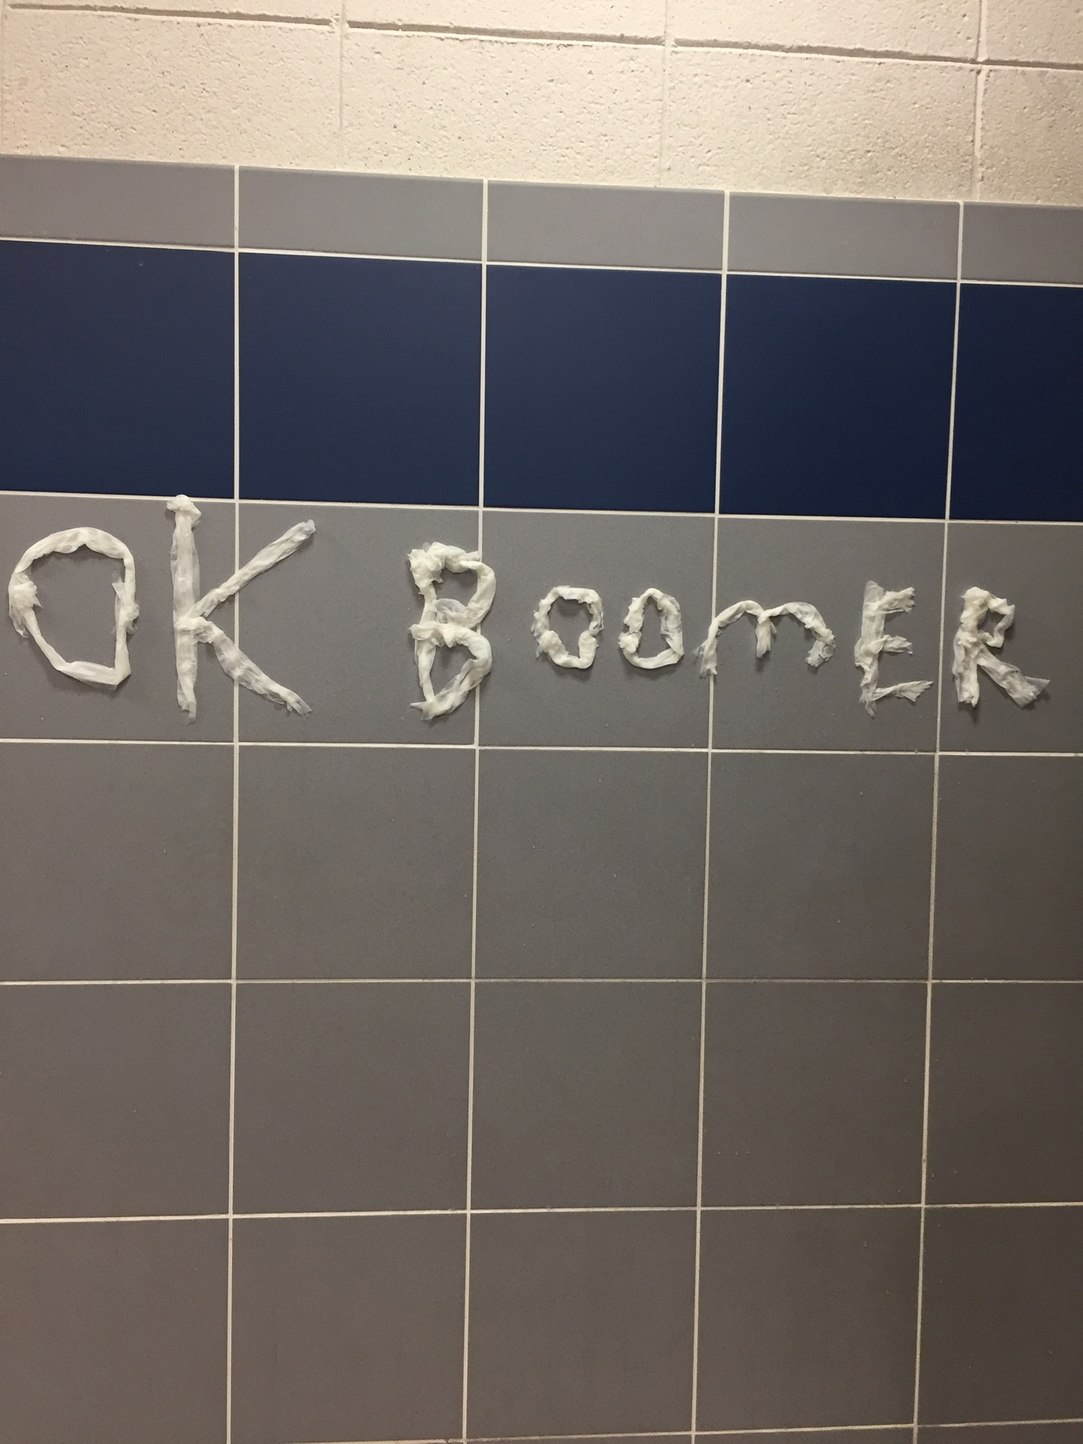 I did this in my school bathroom lol - meme